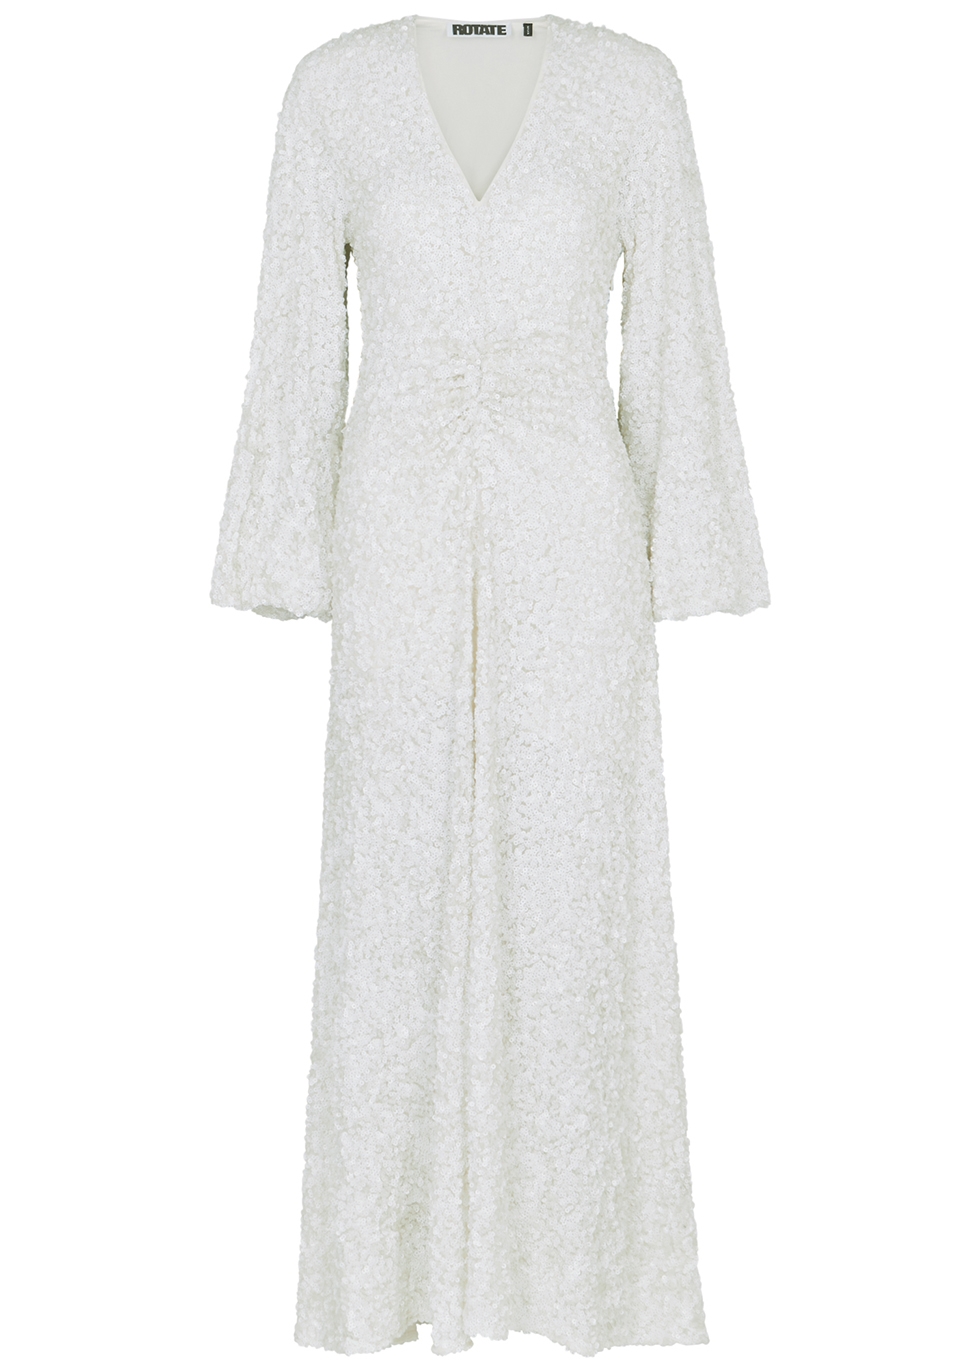 ROTATE Birger Christensen Samantha white sequin gown - Harvey Nichols